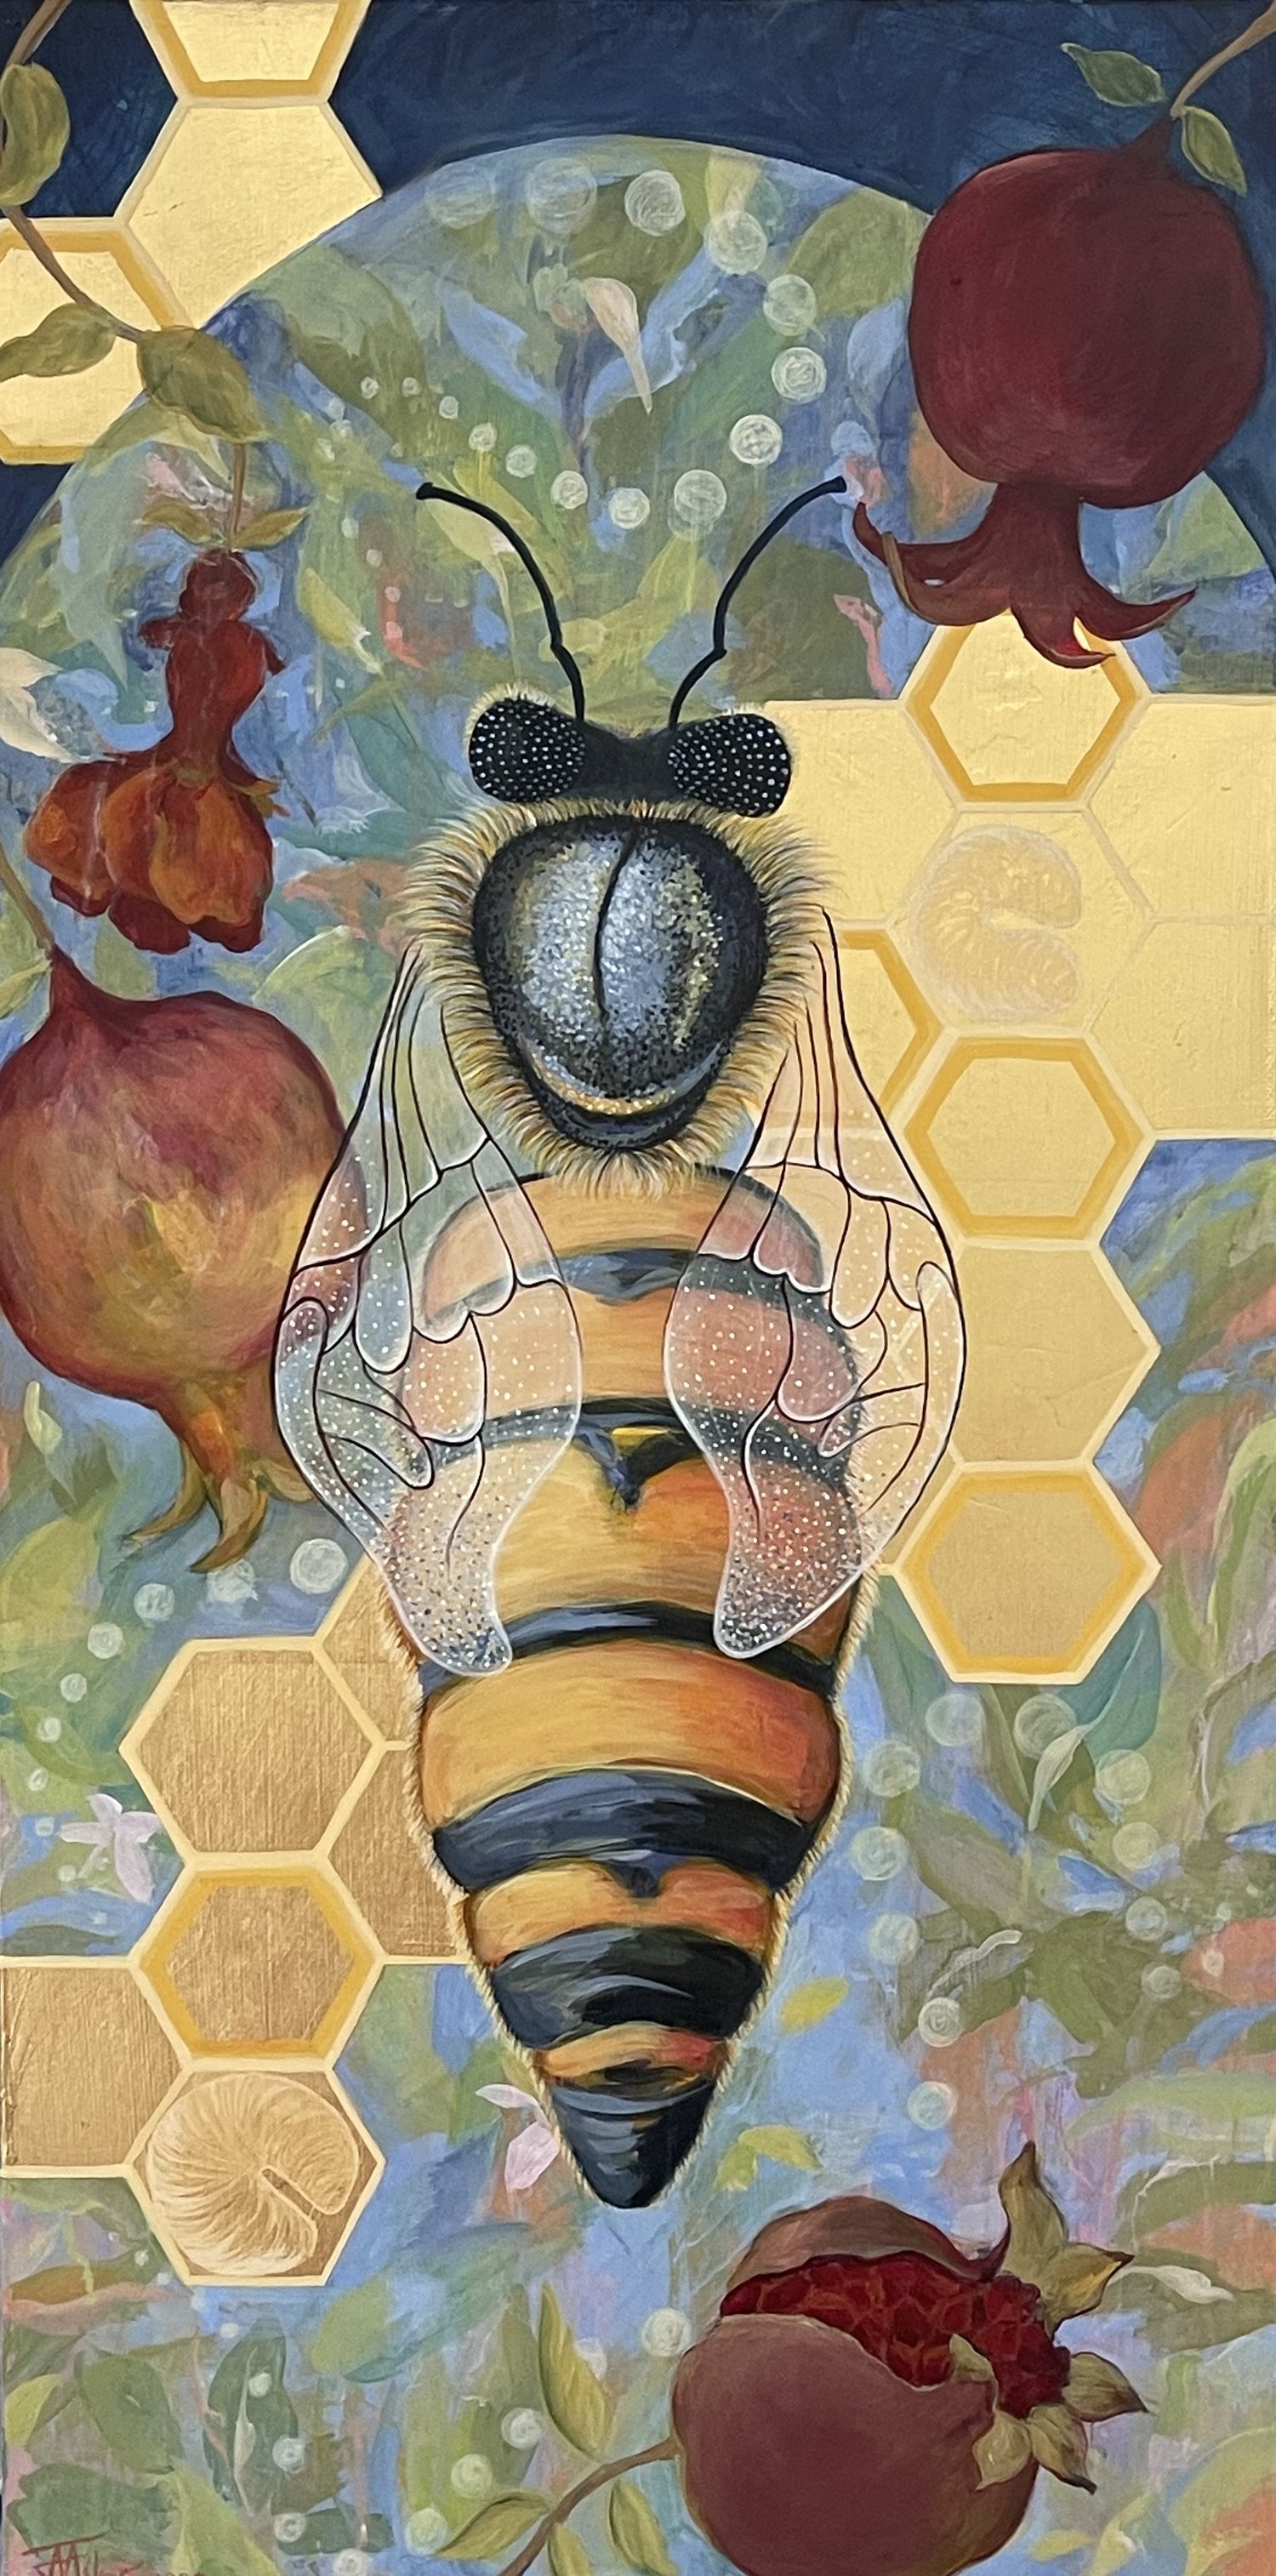 The Honey BEE & Hive Collection – MELI-RLO ART STUDIOS